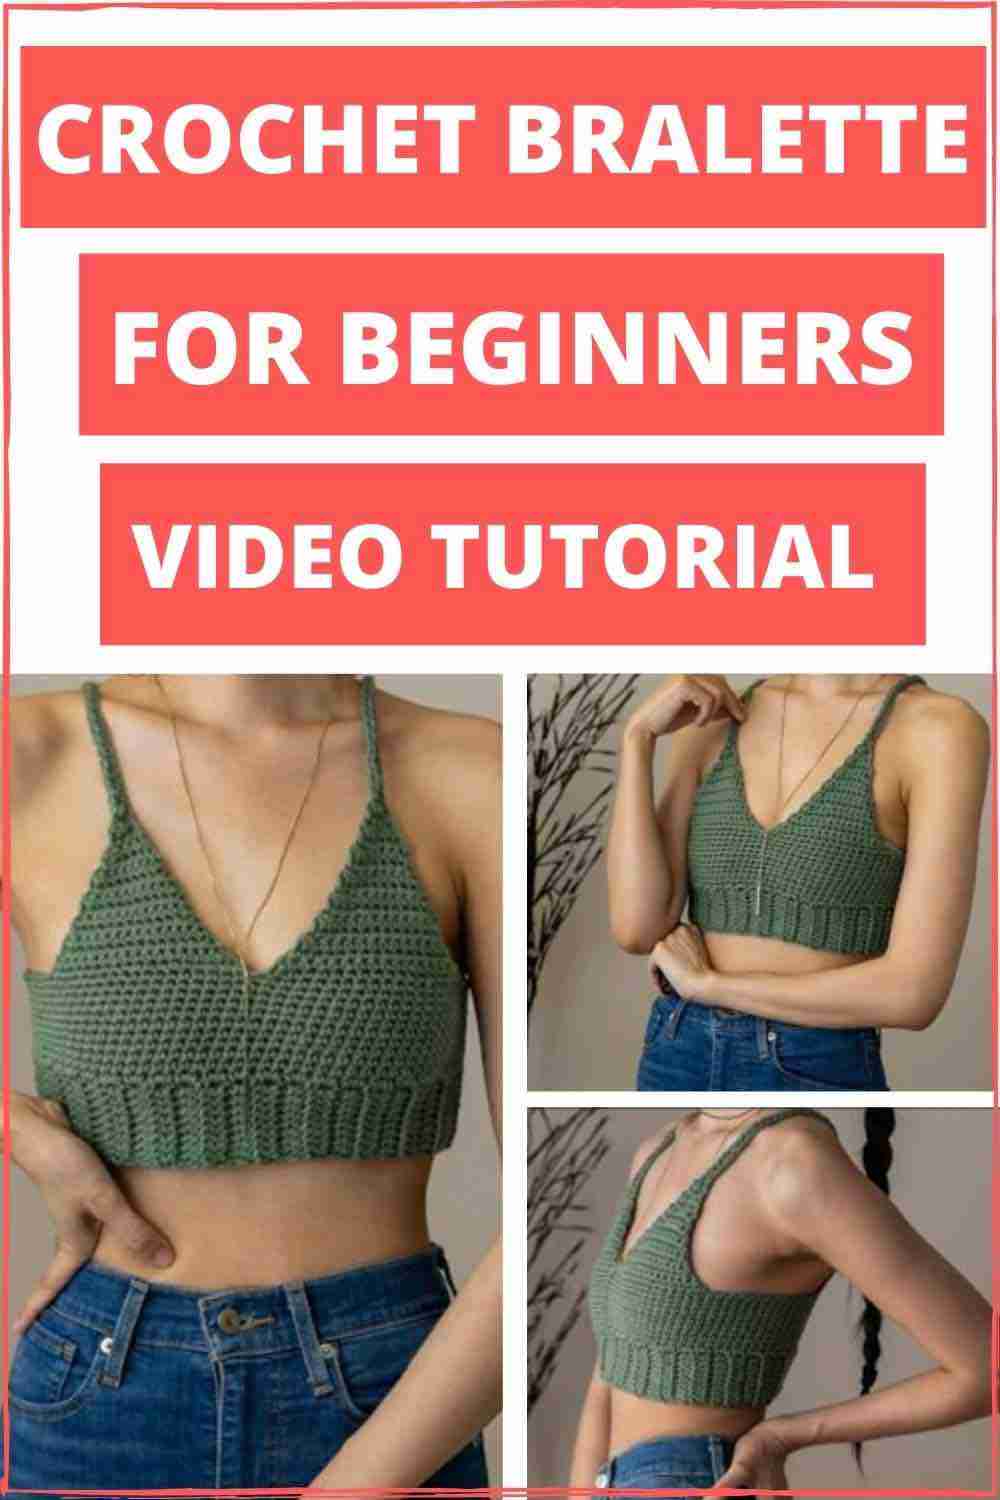 Crochet-Bralette-Video-Tutorial-For-Beginners